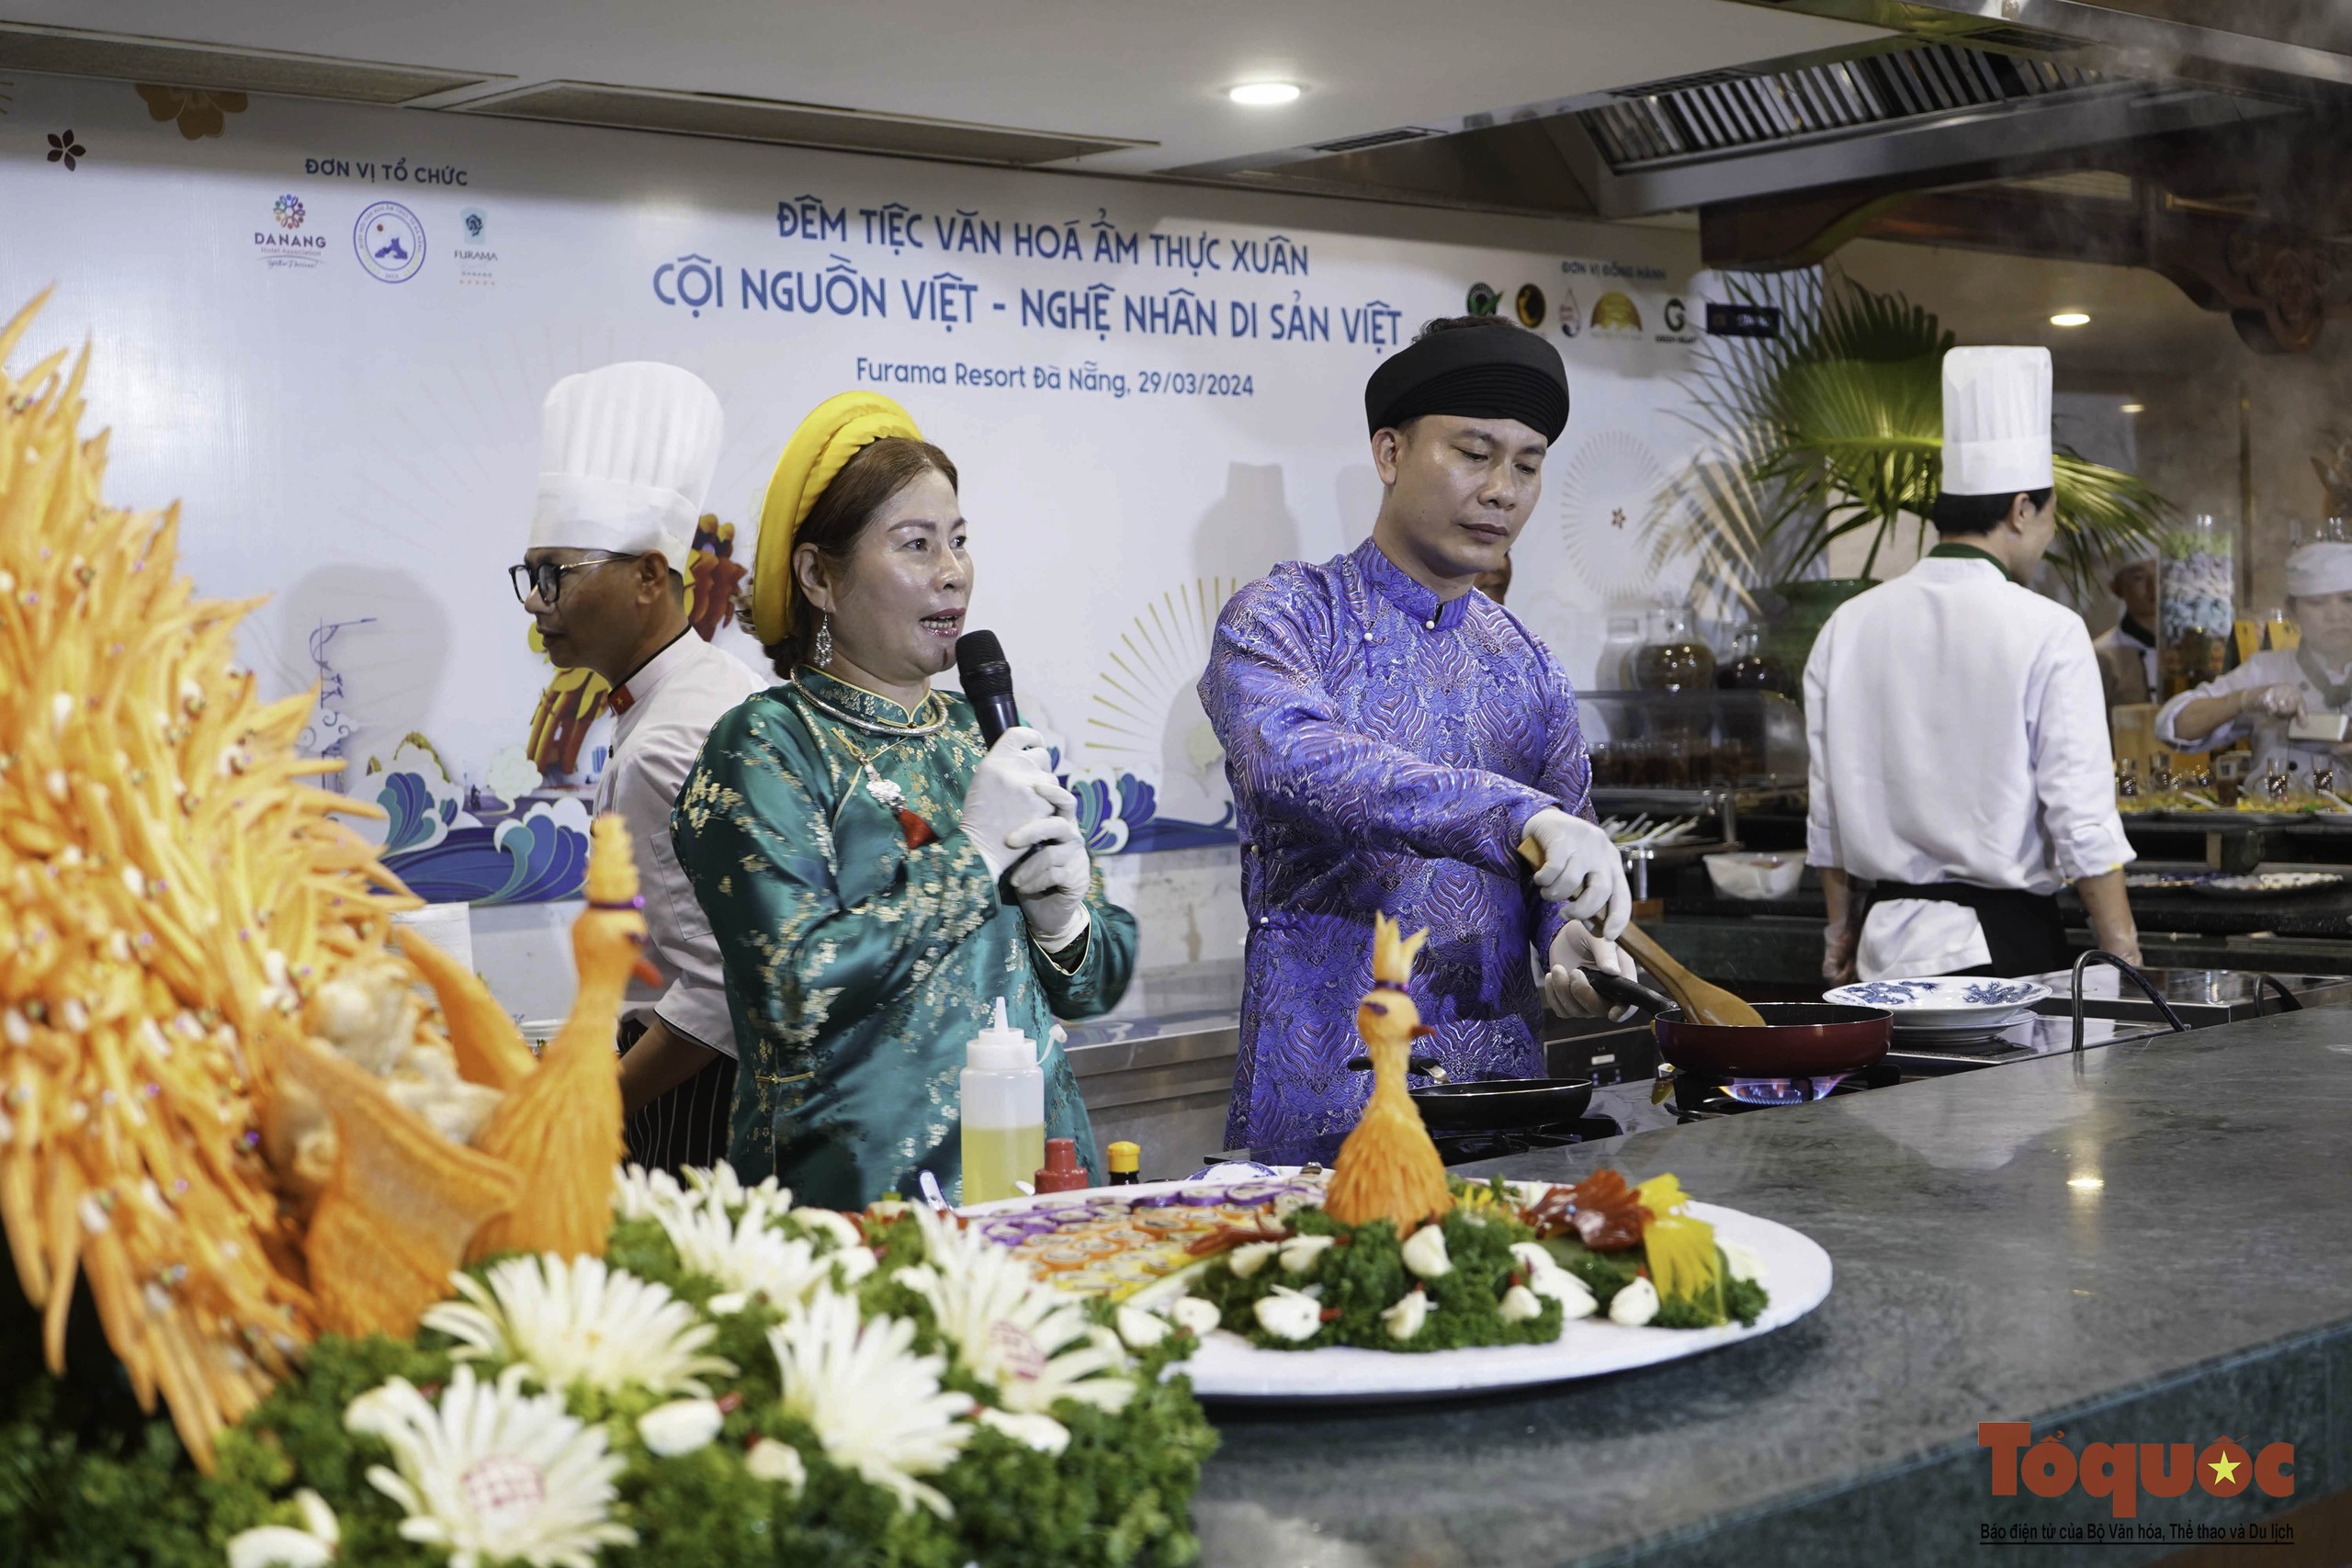 Xem các nghệ nhân ẩm thực hàng đầu Việt Nam quảng diễn những tinh hoa món ngon 3 miền - Ảnh 4.